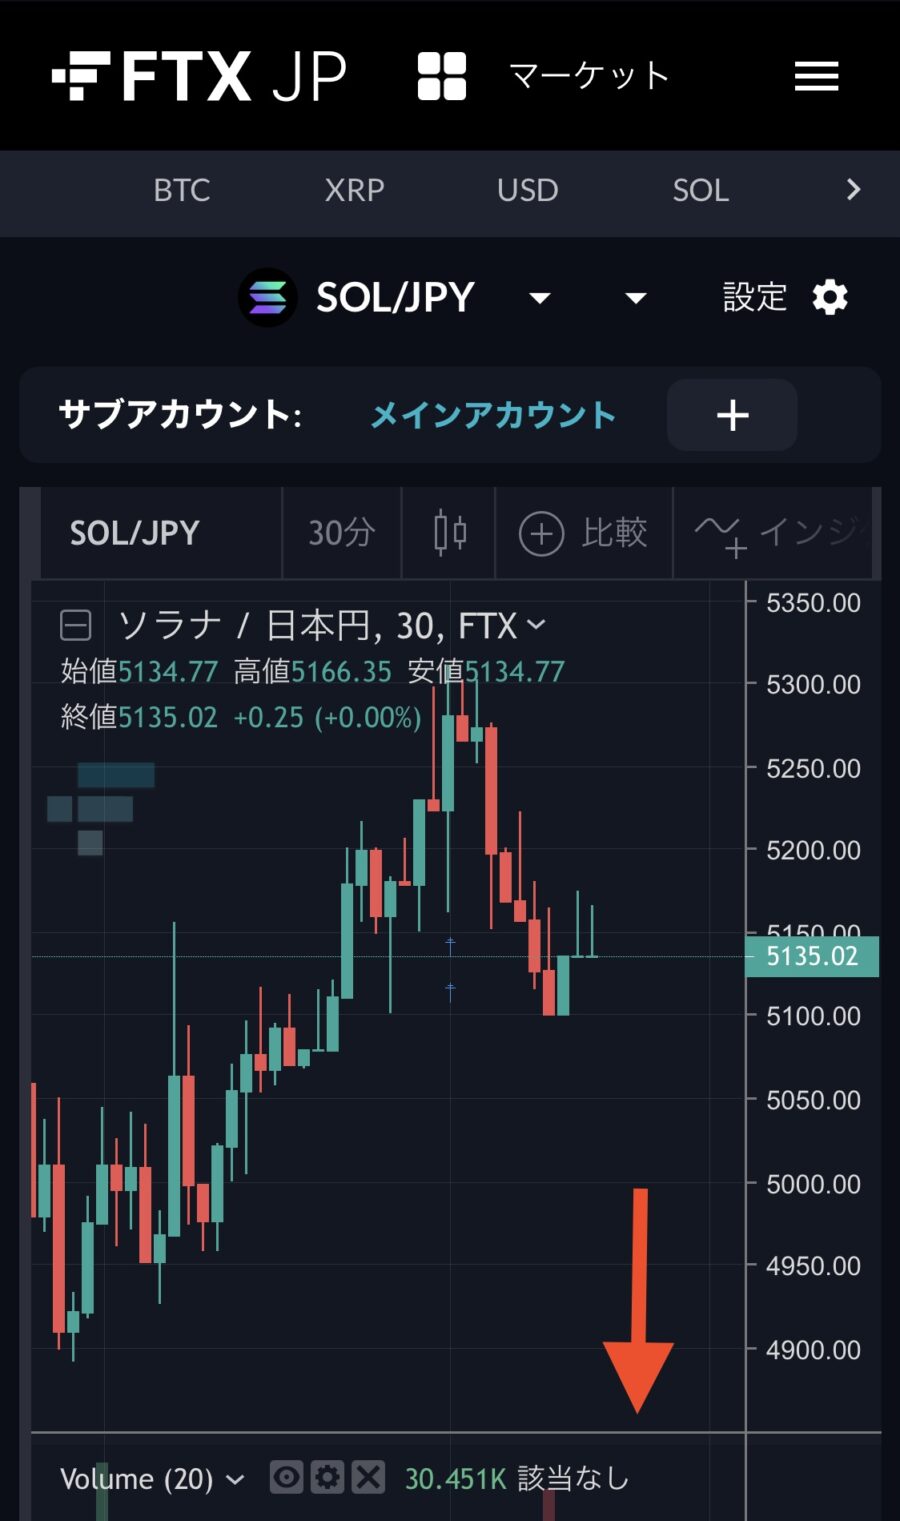 FTX JapanでSOLを日本円に換金する手順